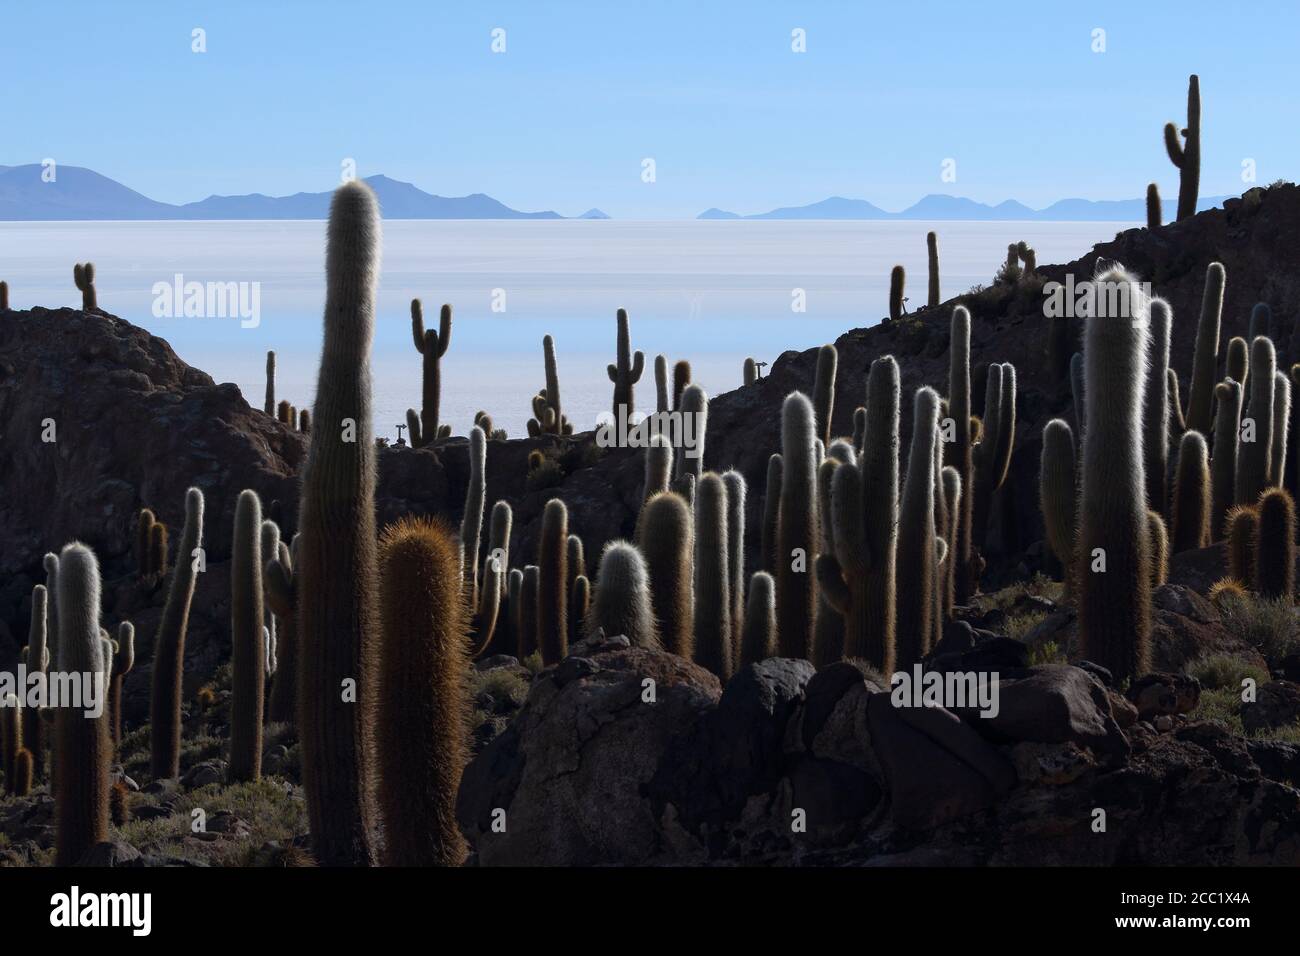 Bolivia, View of Salar de Uyuni and Isla del Pescado Stock Photo